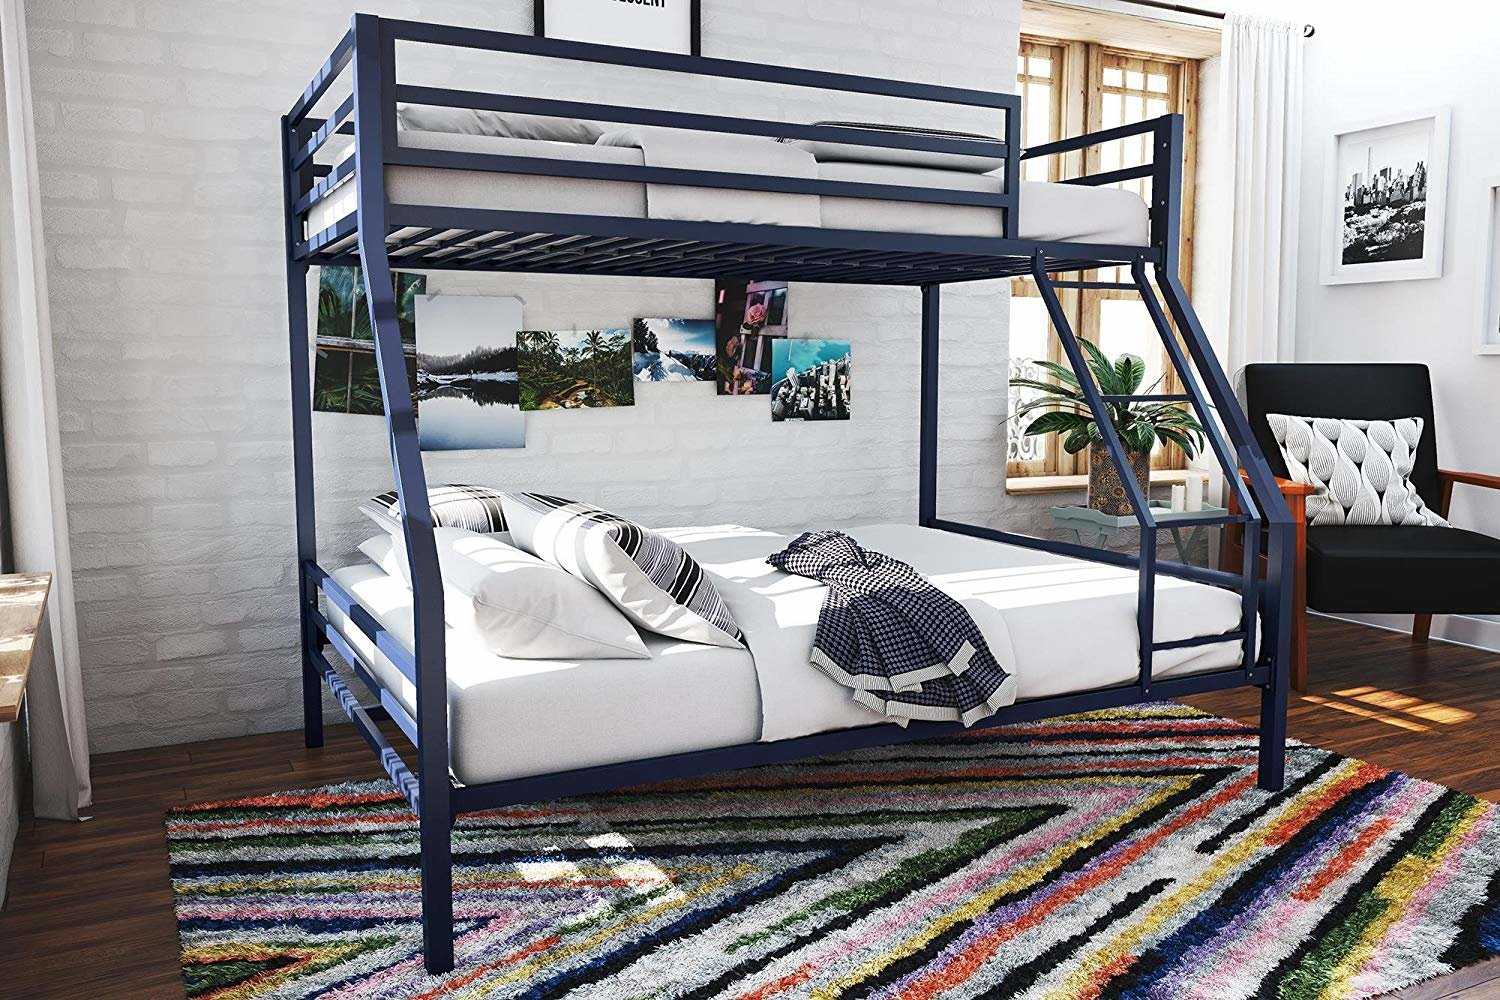 Двухъярусные кровати в интерьере — как выбрать? интересный обзор с 50 фото дизайна.